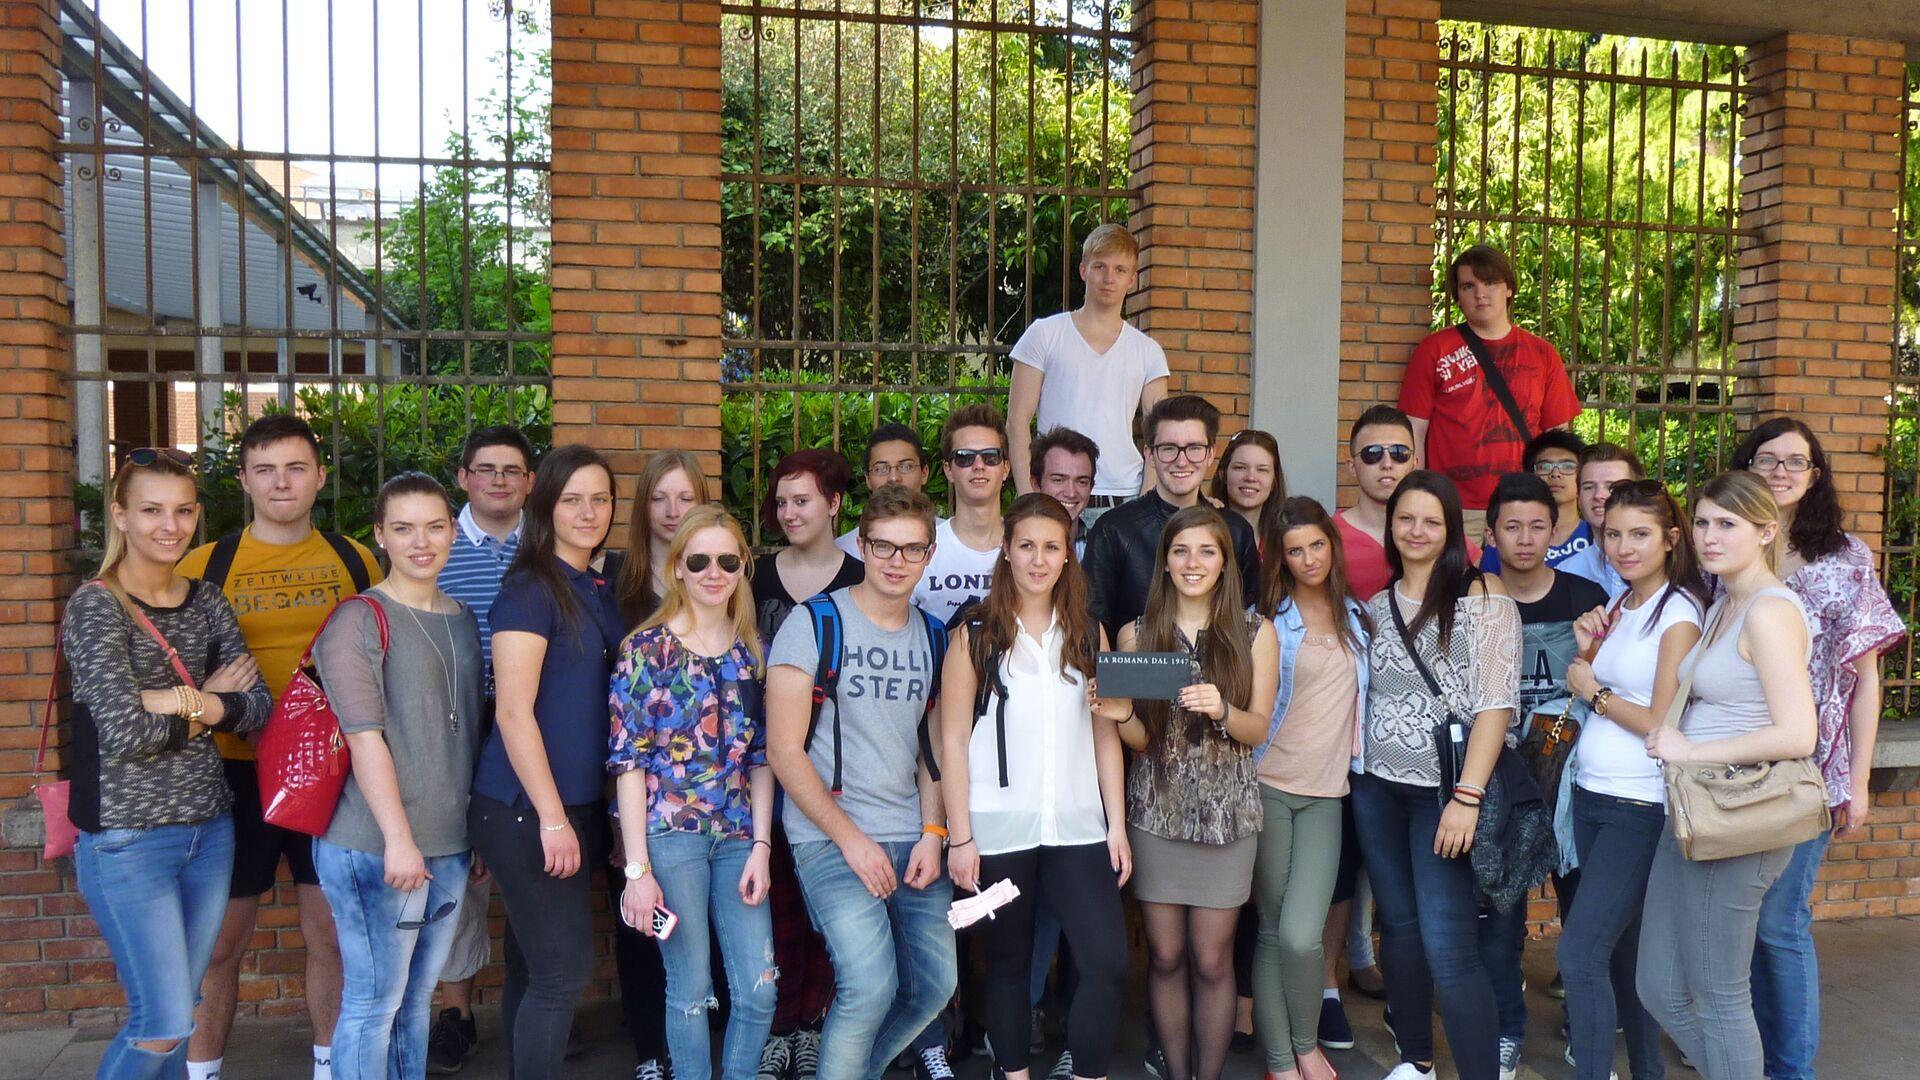 Sprachaufenthalt Italien, Verona - Idea Verona - Studenten